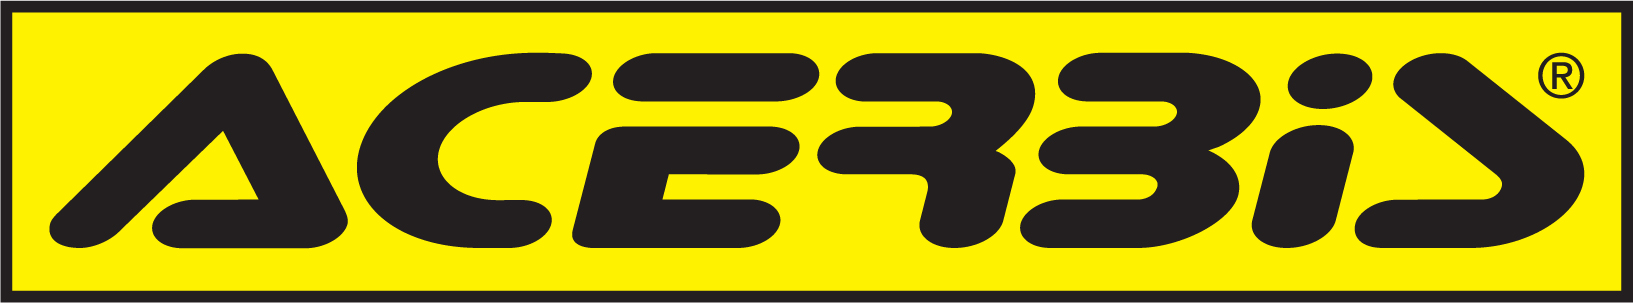 Acerbis Logo - Acerbis Marketing Site